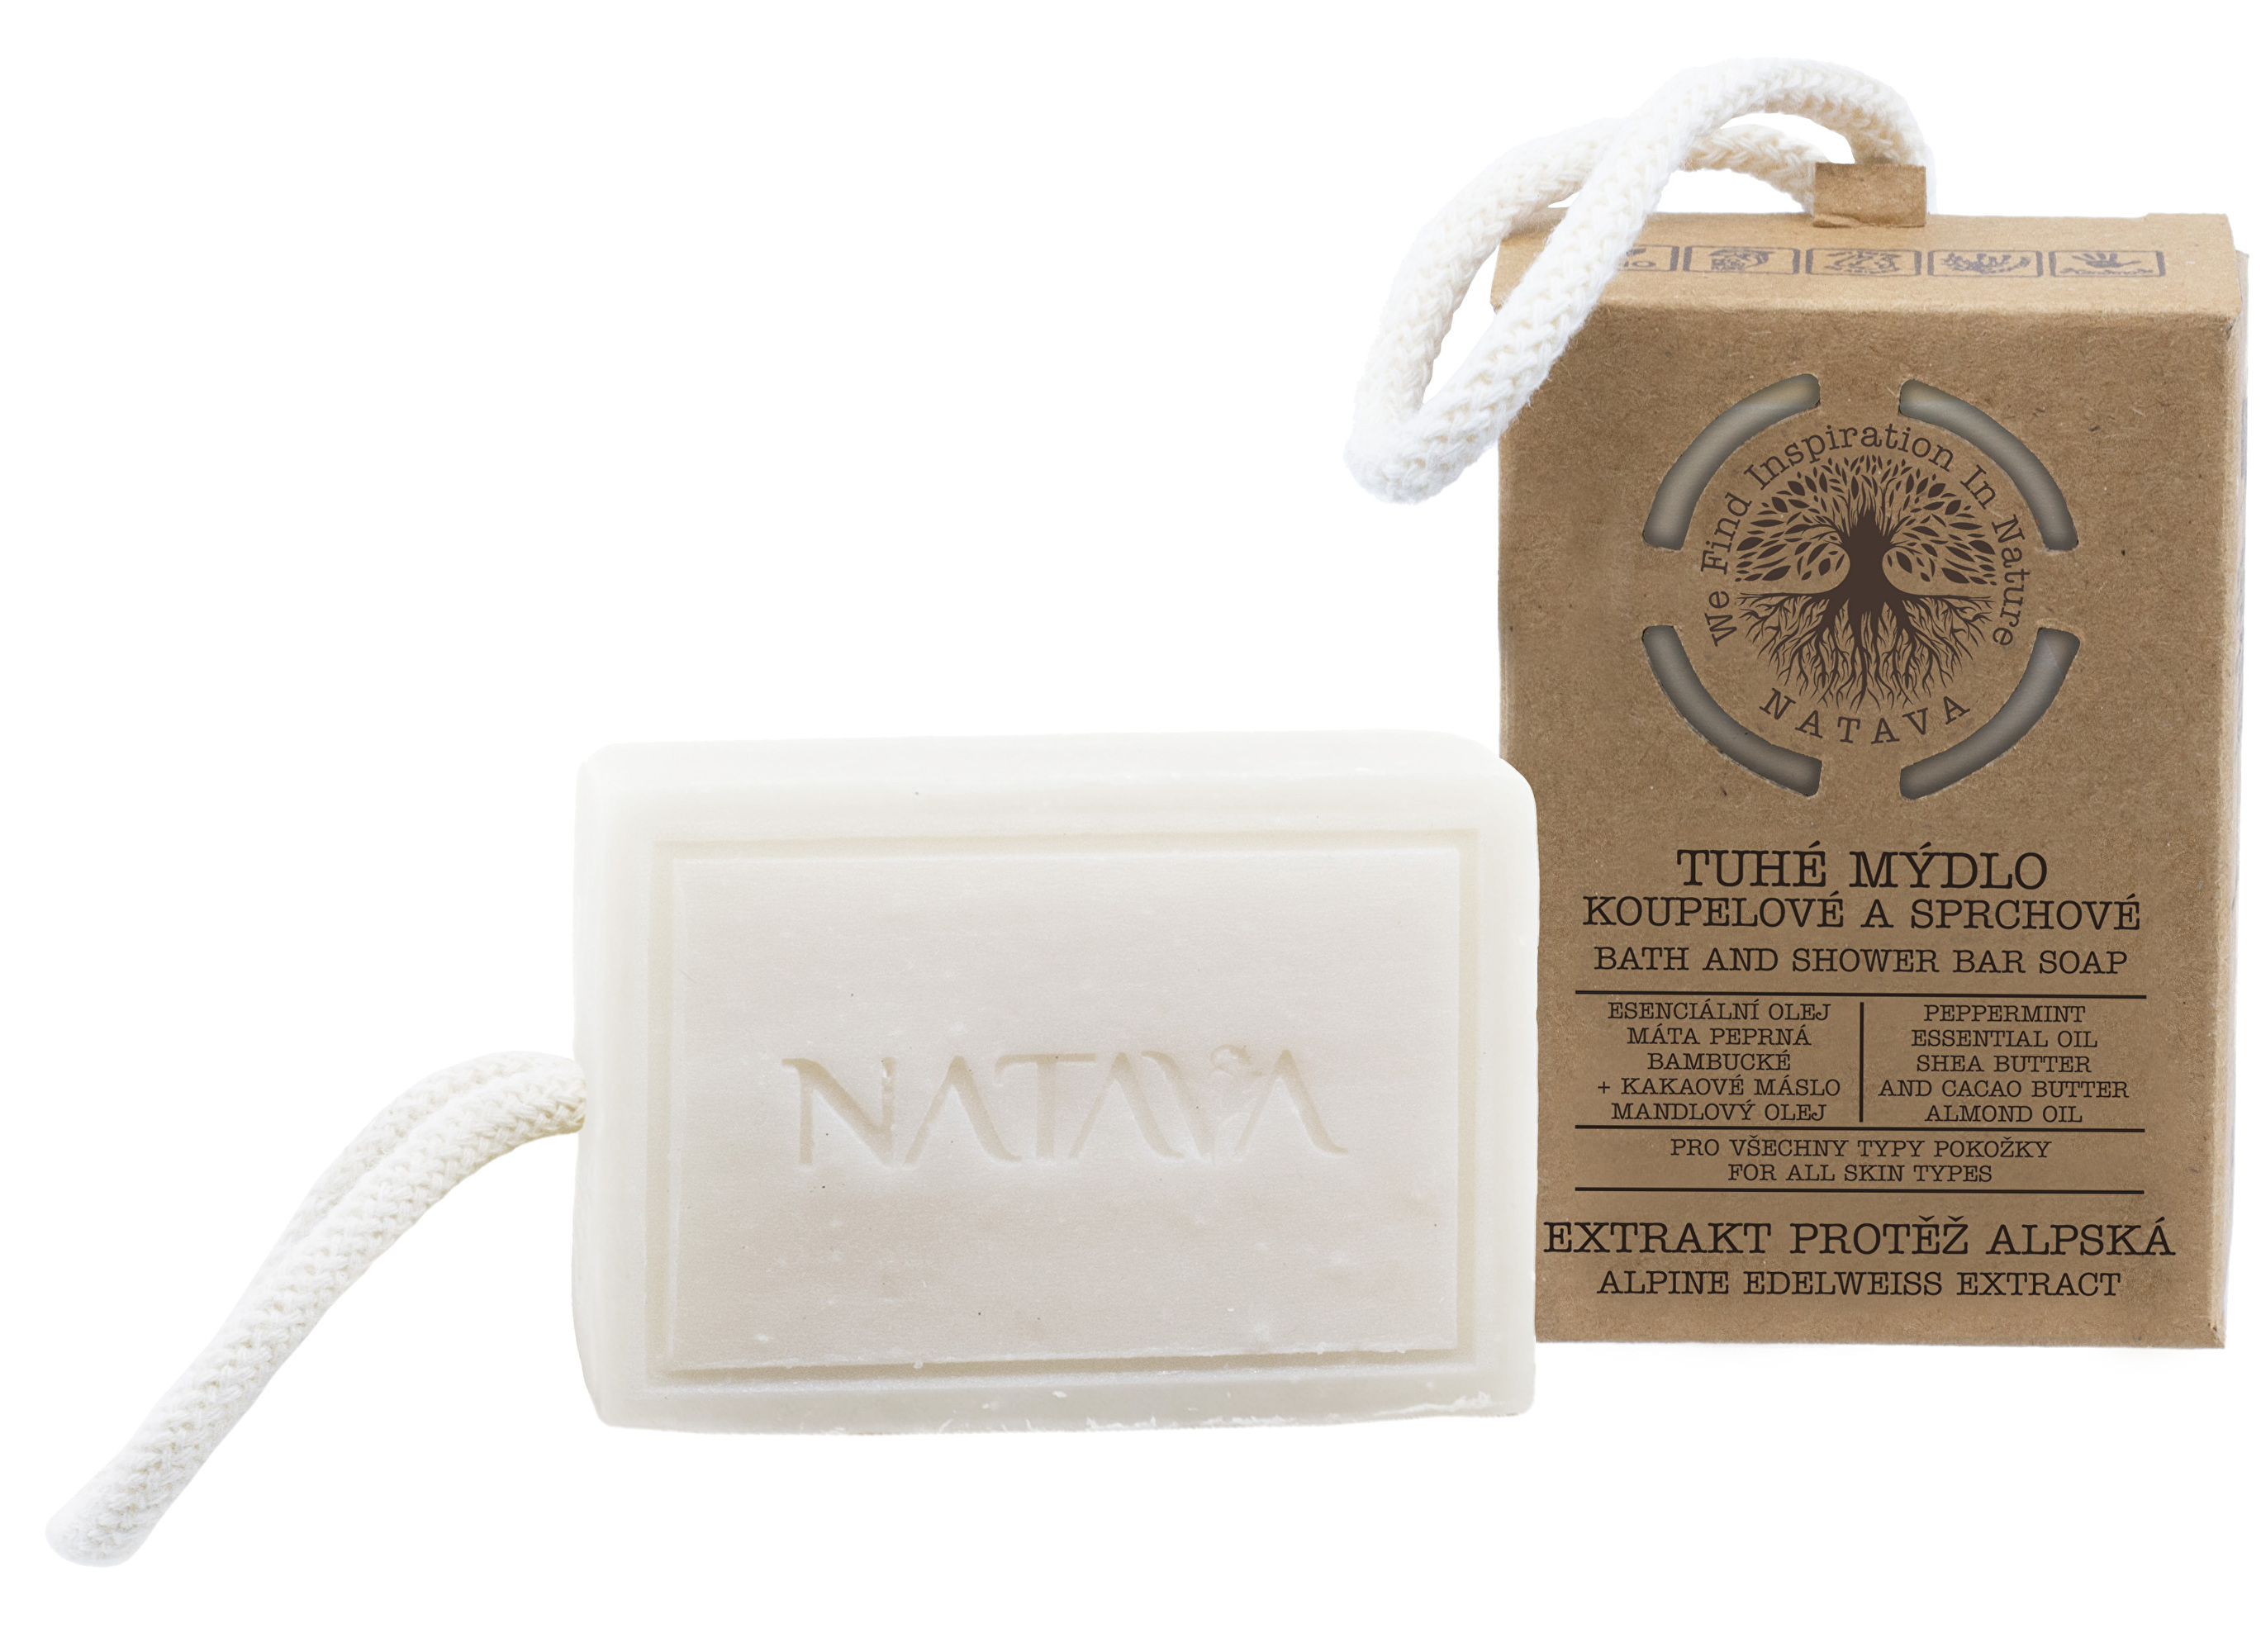 Zobrazit detail výrobku Natava Koupelové a sprchové tuhé mýdlo – Extrakt protěž alpská 100 g + 2 měsíce na vrácení zboží